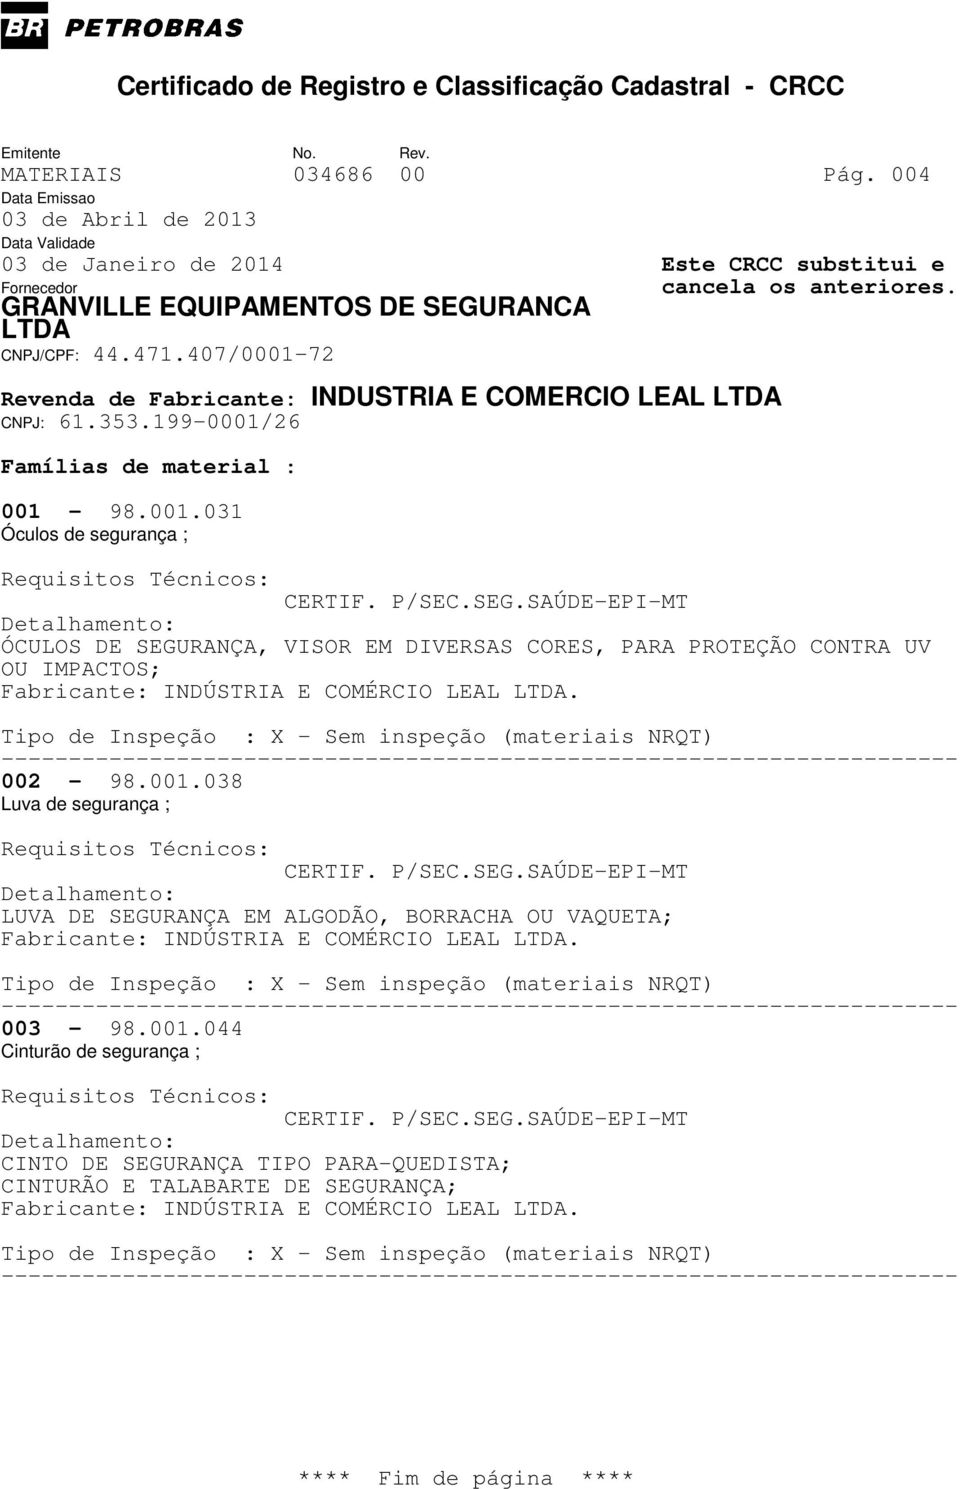 002-98.001.038 Luva de segurança ; LUVA DE SEGURANÇA EM ALGODÃO, BORRACHA OU VAQUETA; Fabricante: INDÚSTRIA E COMÉRCIO LEAL.